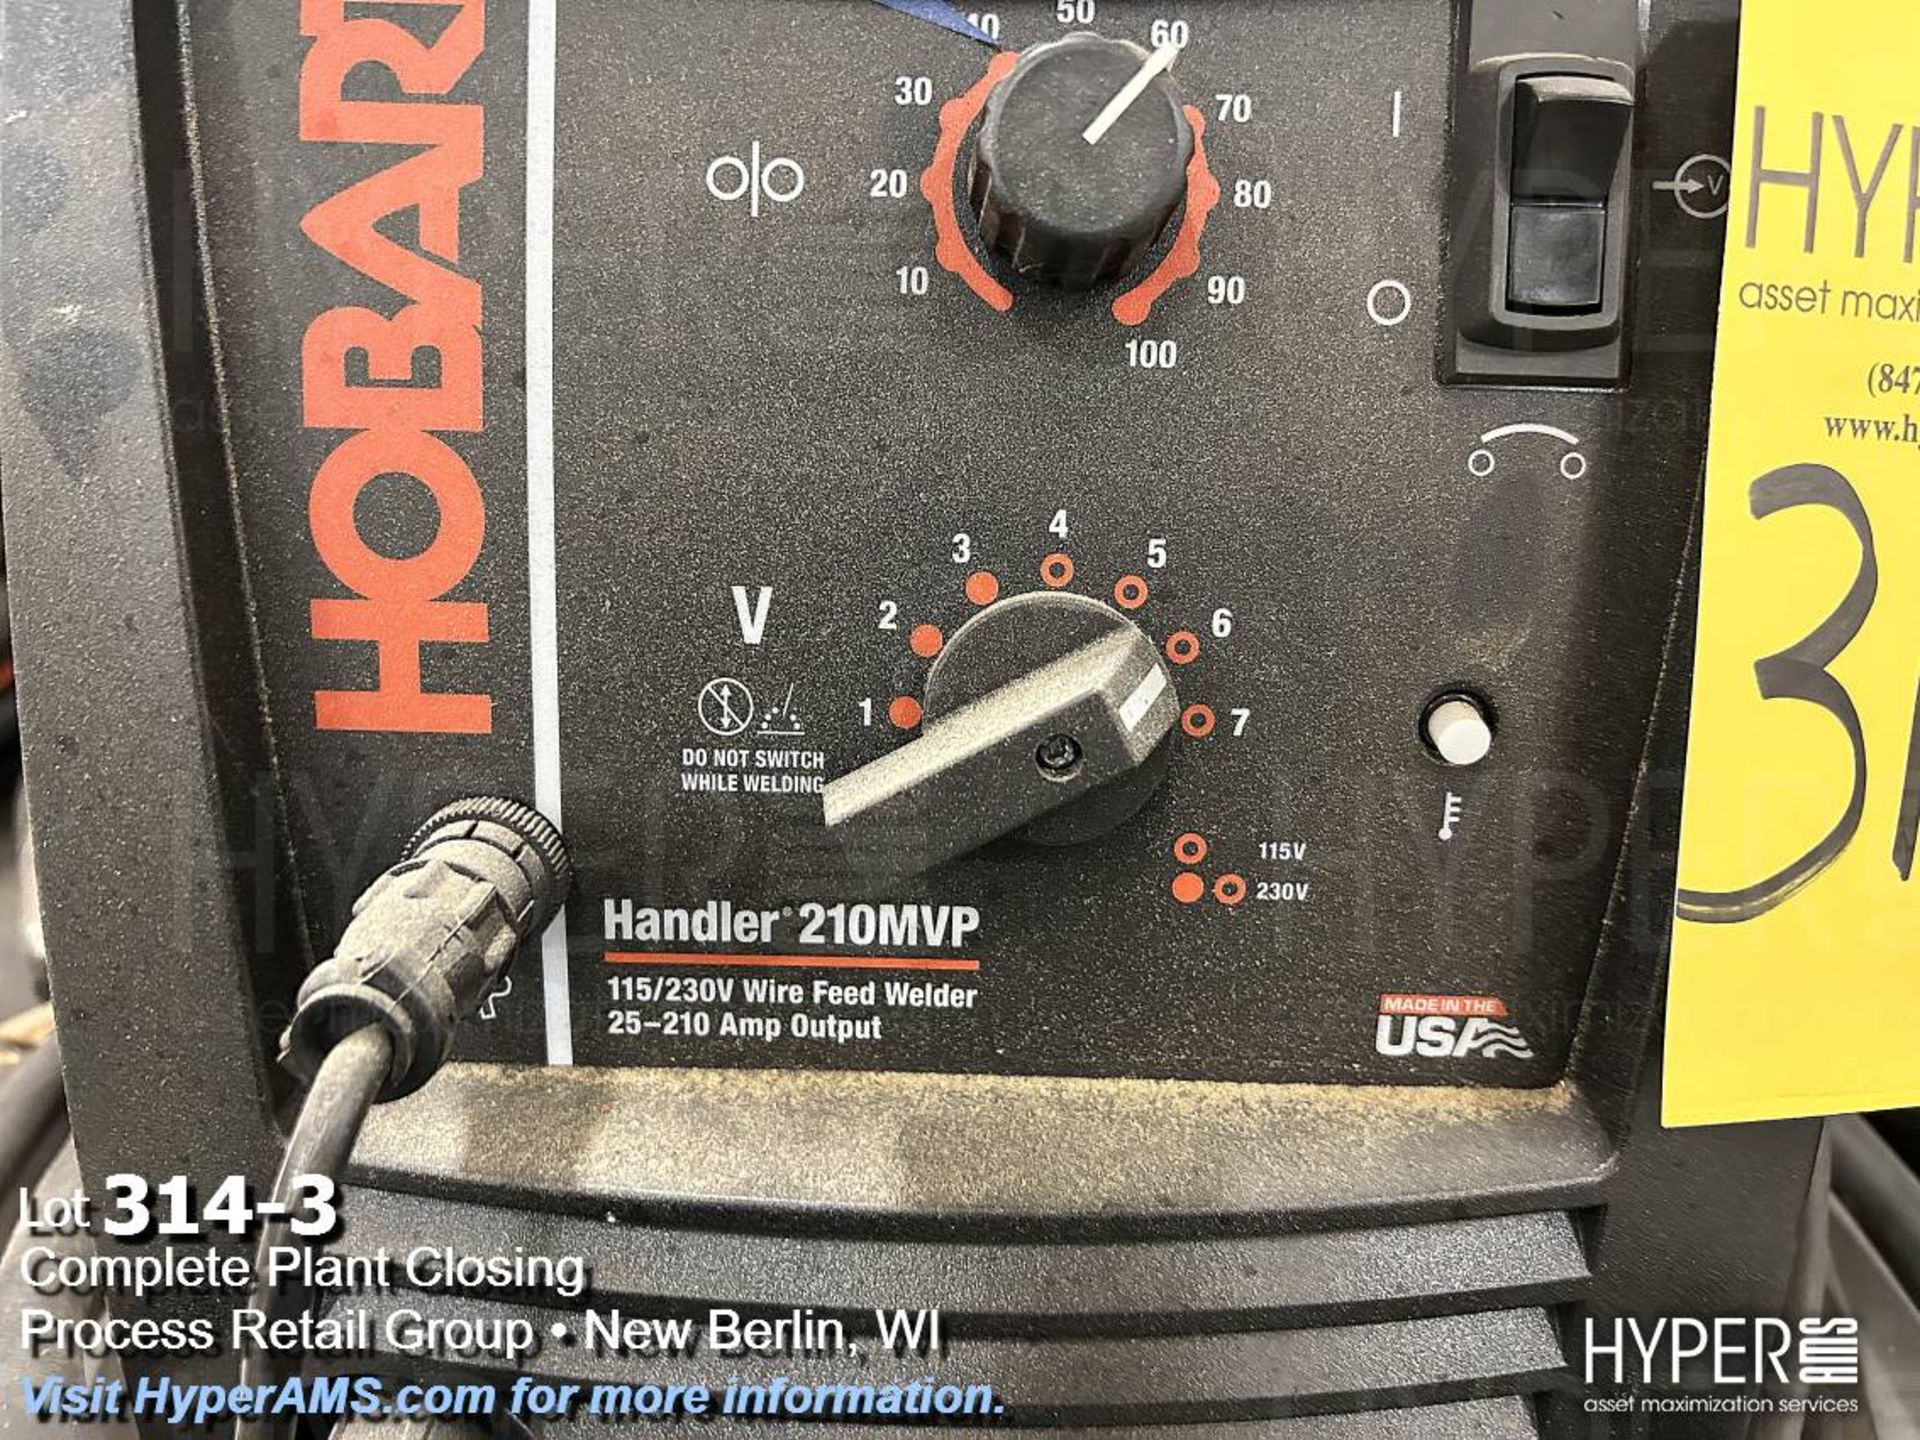 Hobart Handler 210mvp 115/230v welder - Image 3 of 6